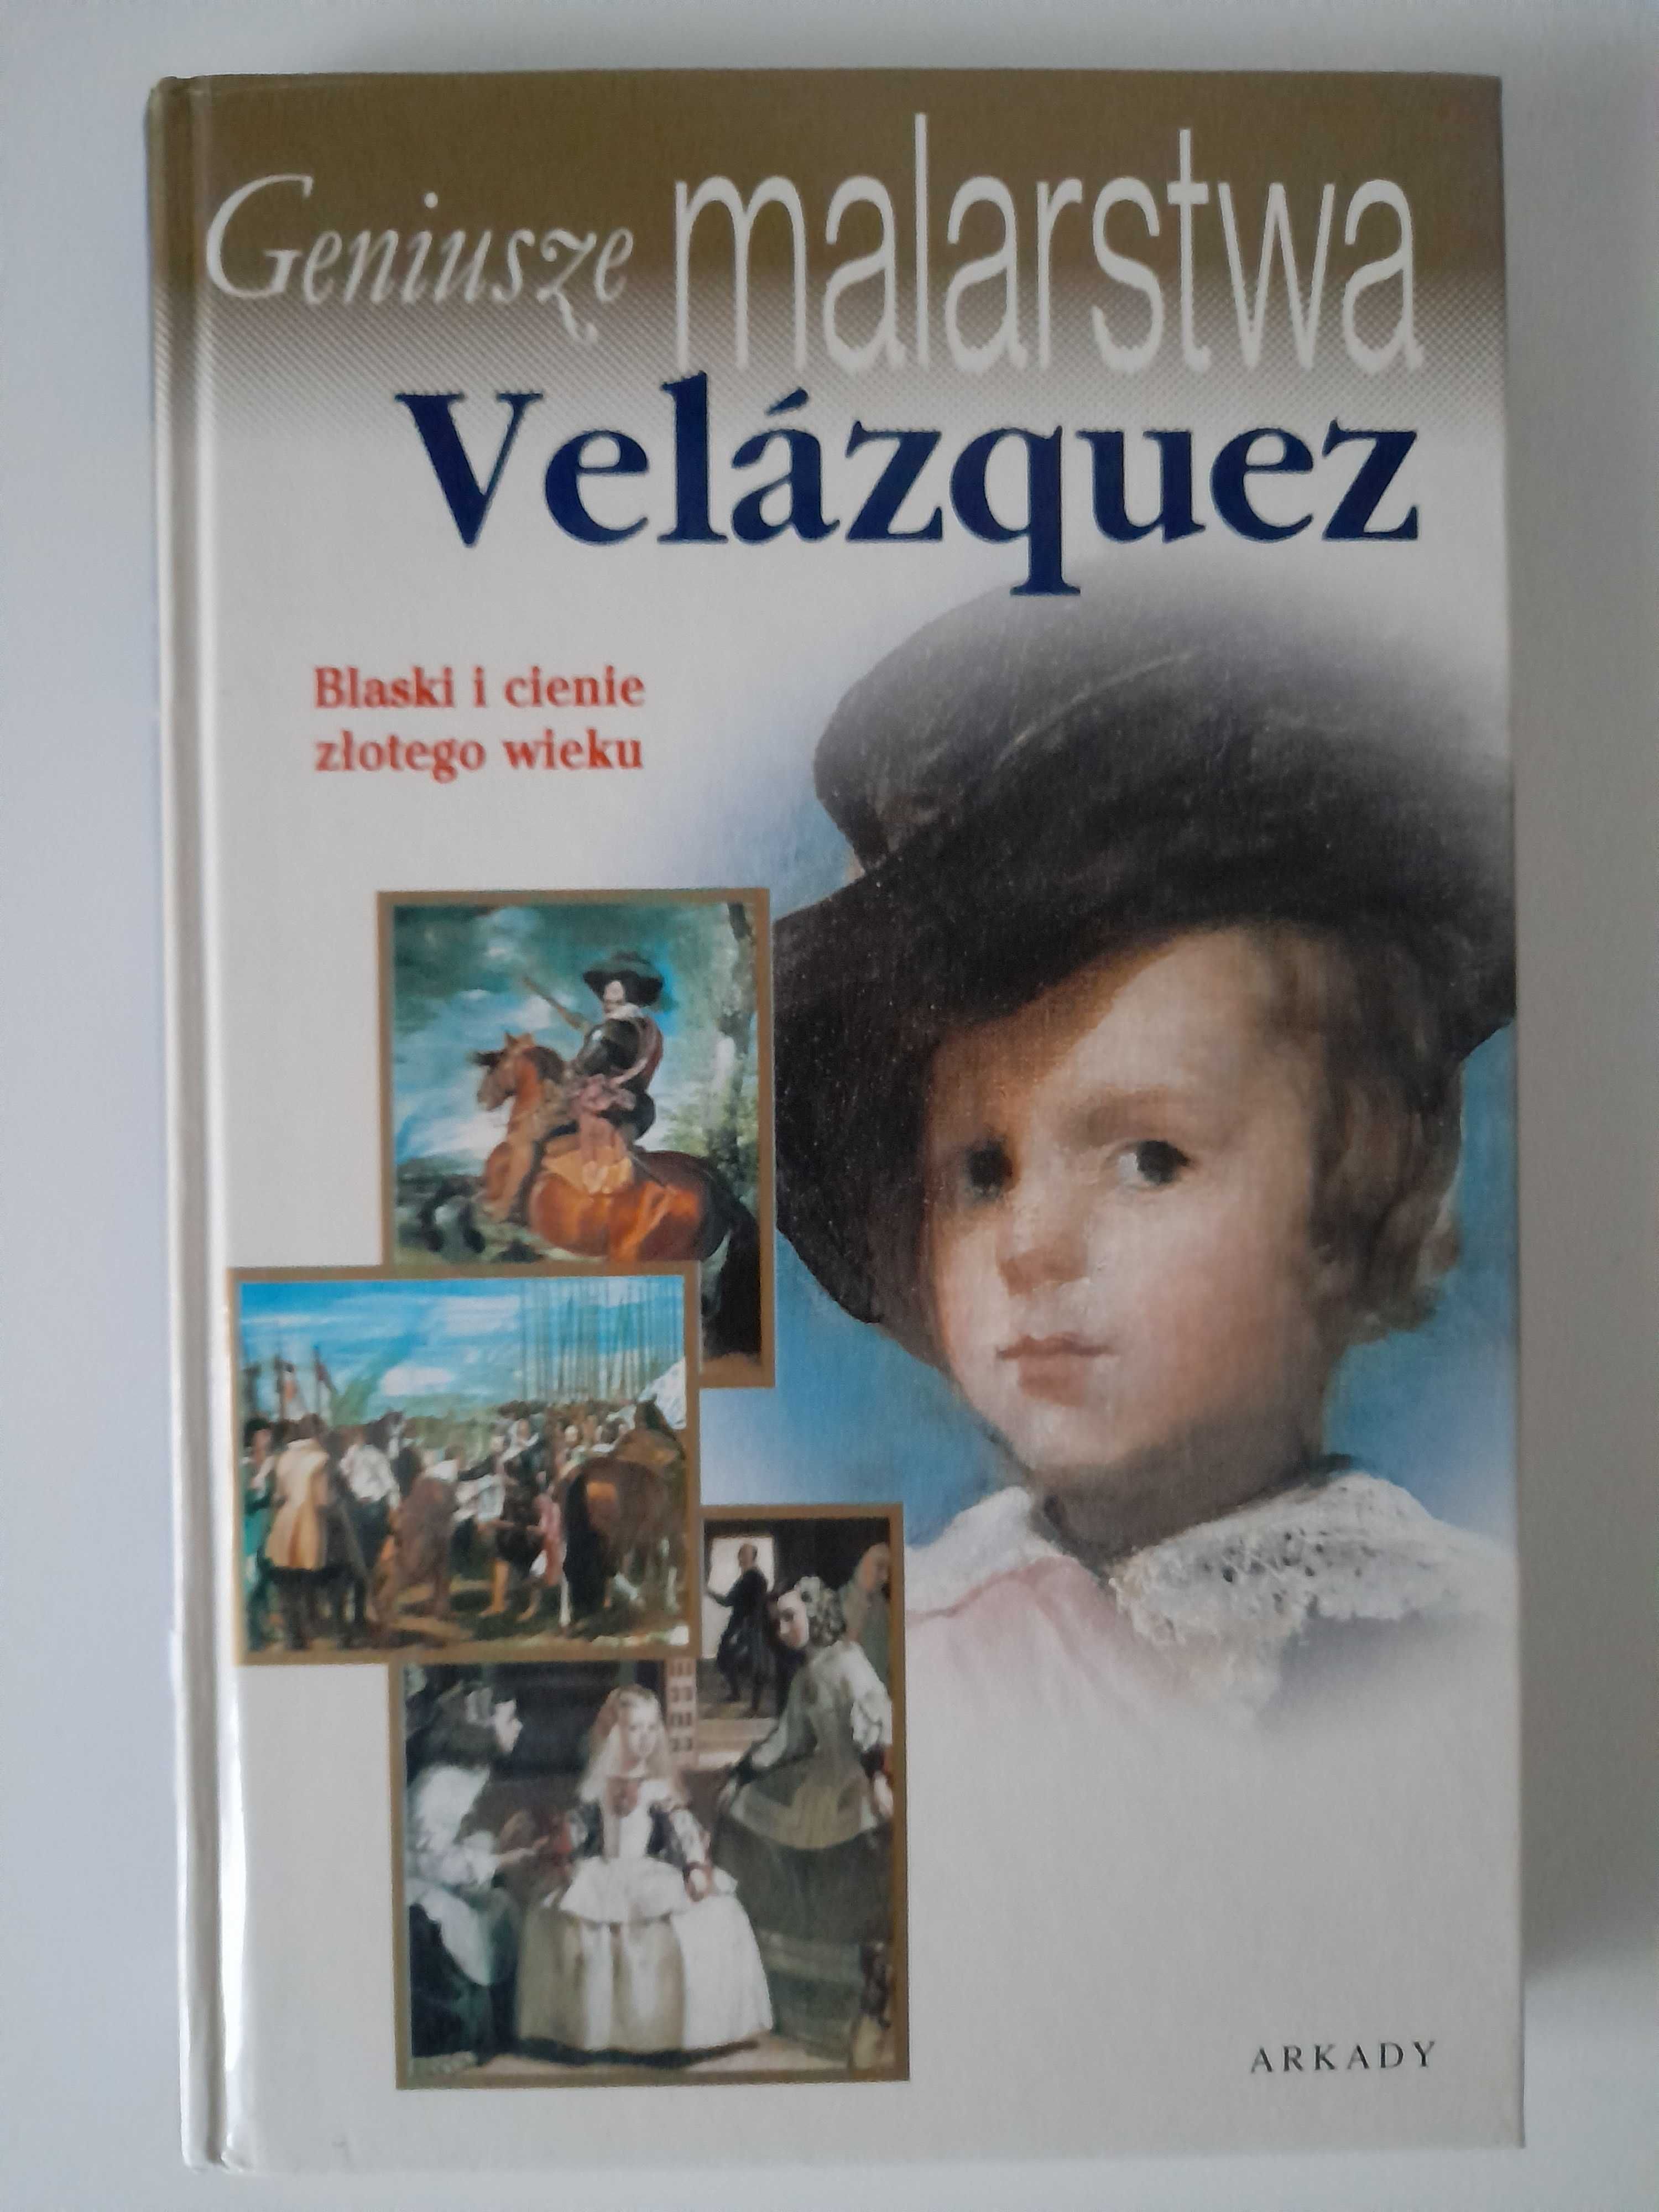 Geniusze malarstwa - Velazquez